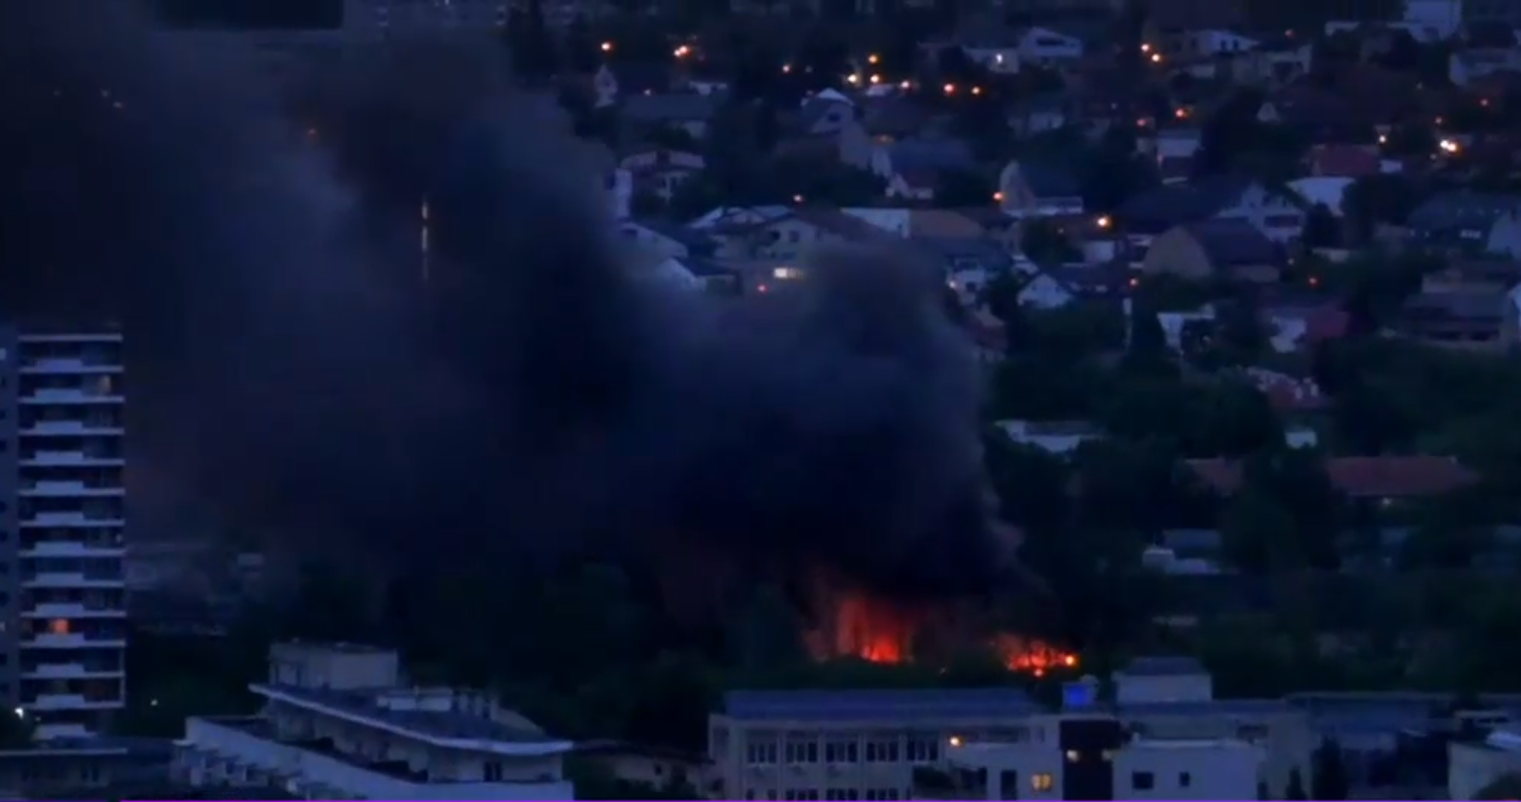 Incendiu și explozii la o clădire din Sectorul 1 al Capitalei. Pompierii au intervenit cu 15 autospeciale. A fost emis mesaj RO-Alert